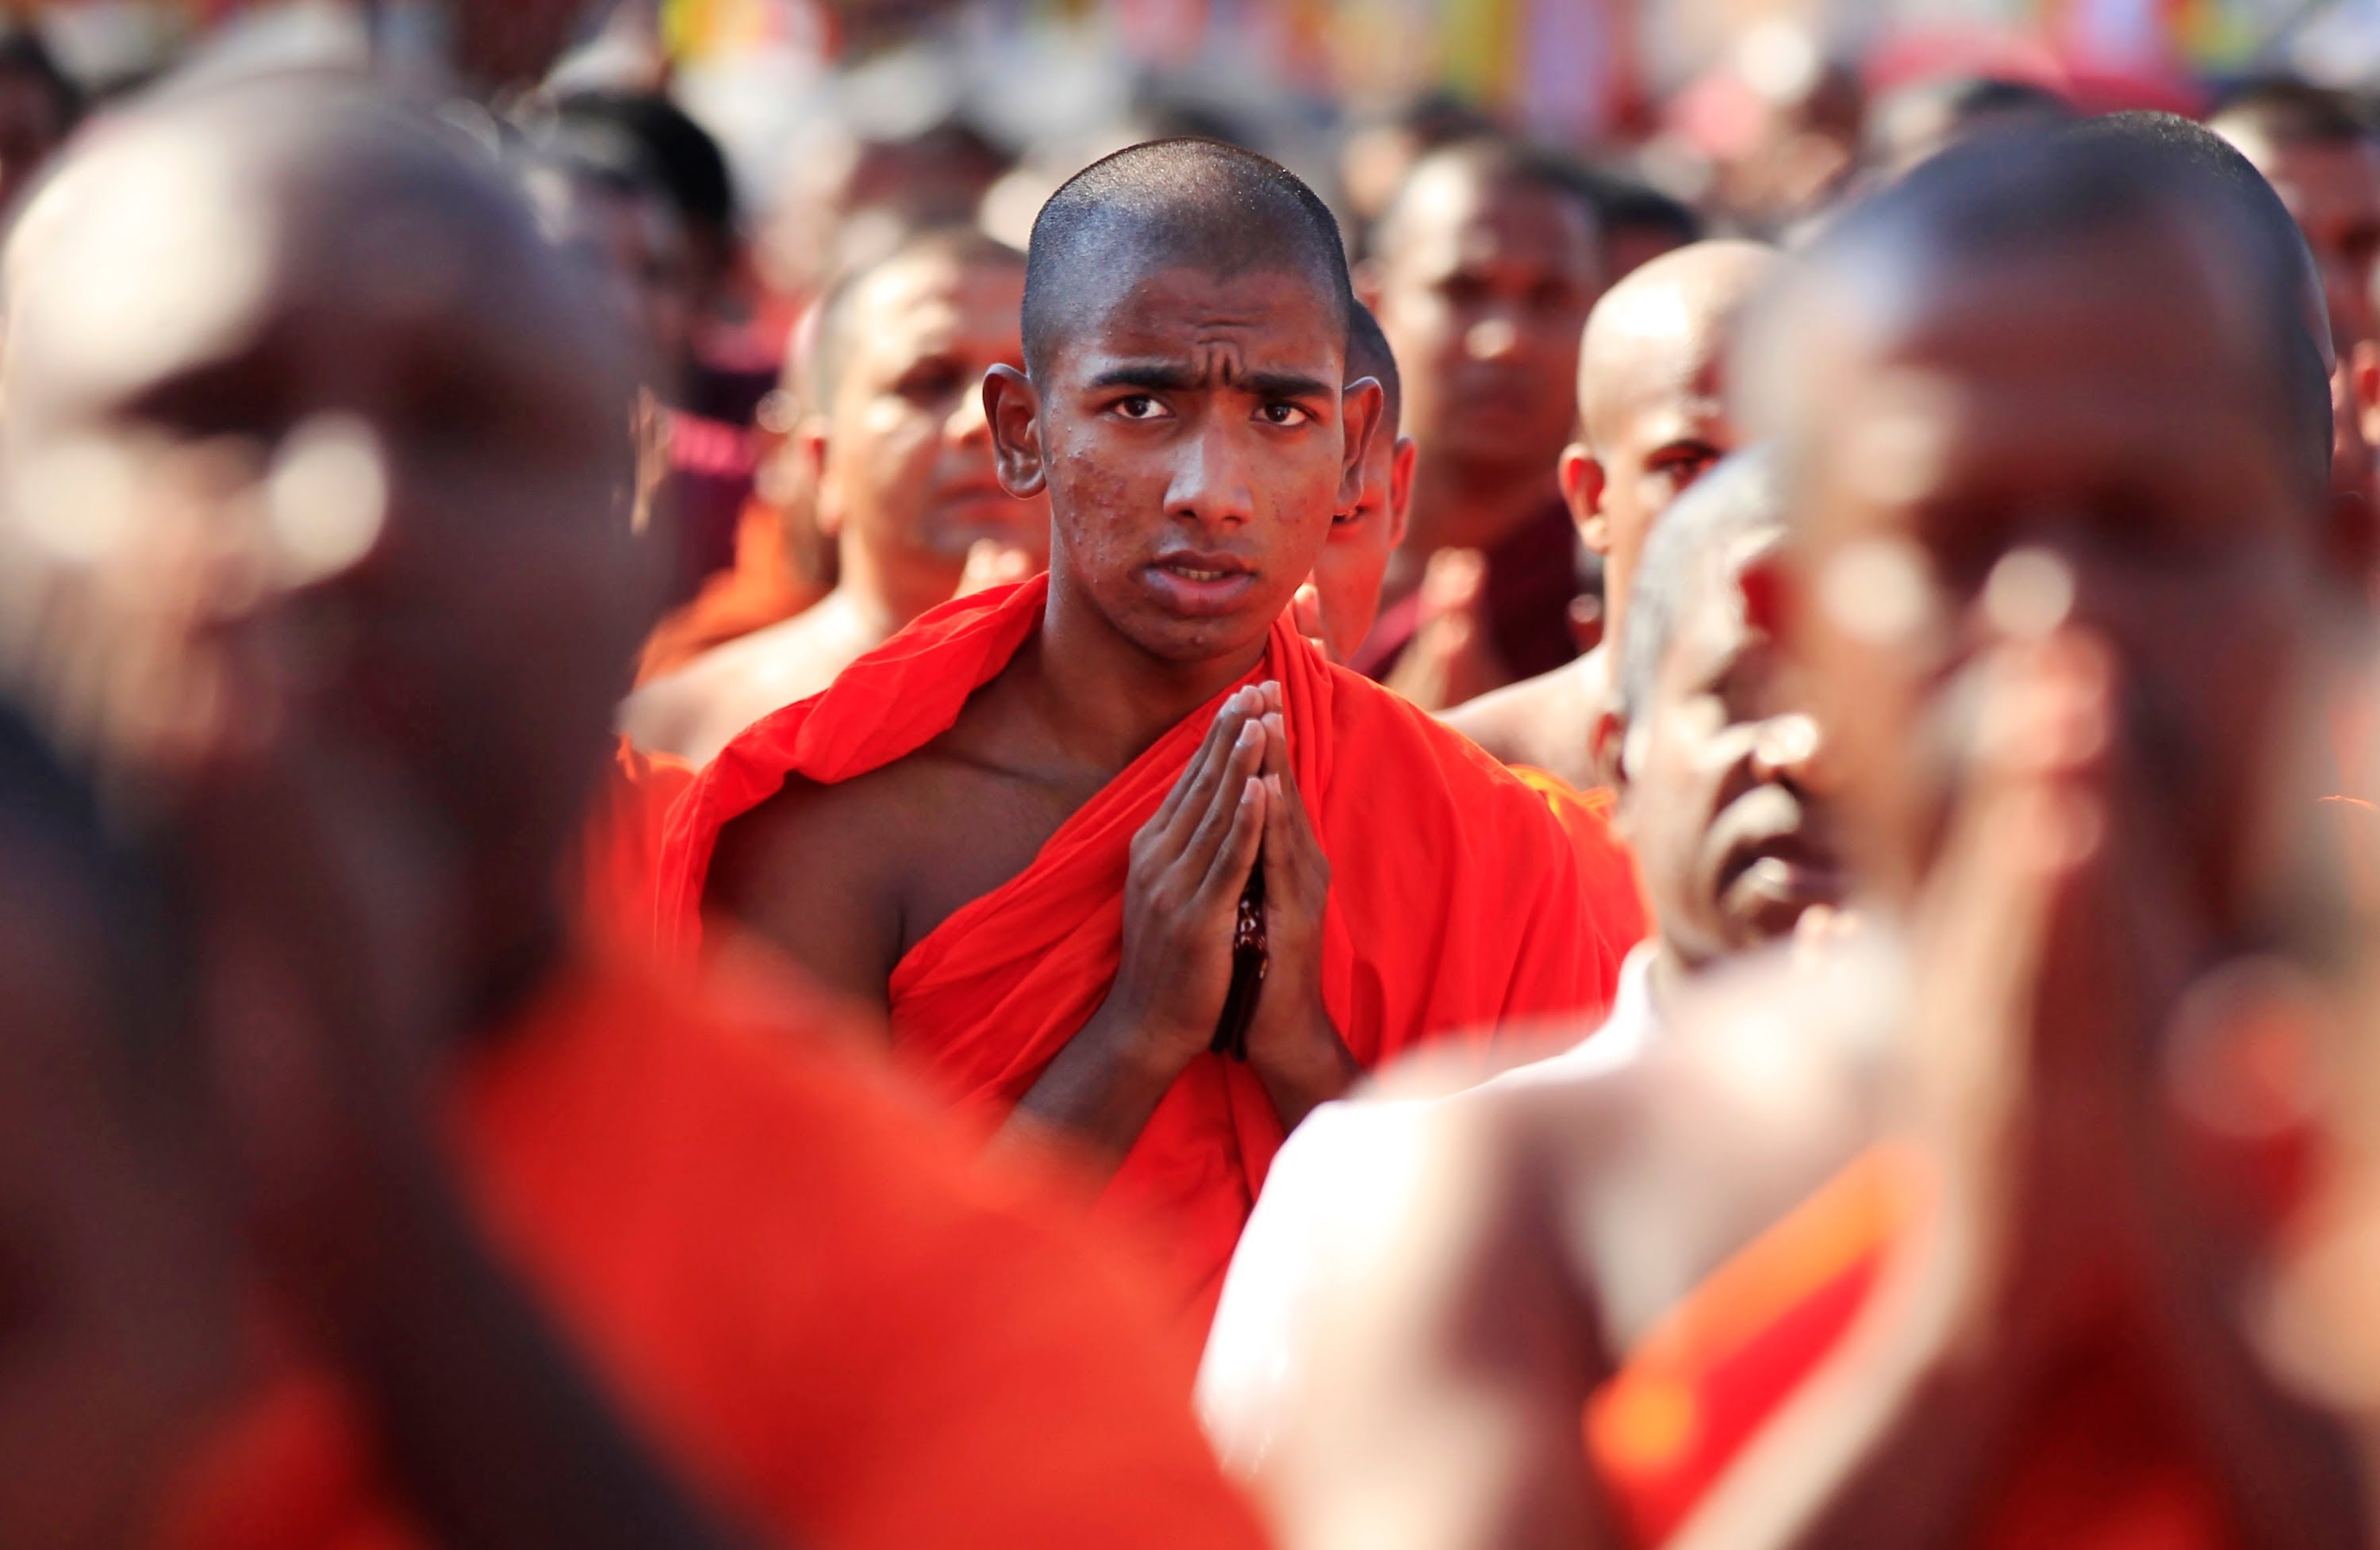 O budismo é aplicado no dia a dia por pessoas comuns e não apenas monges